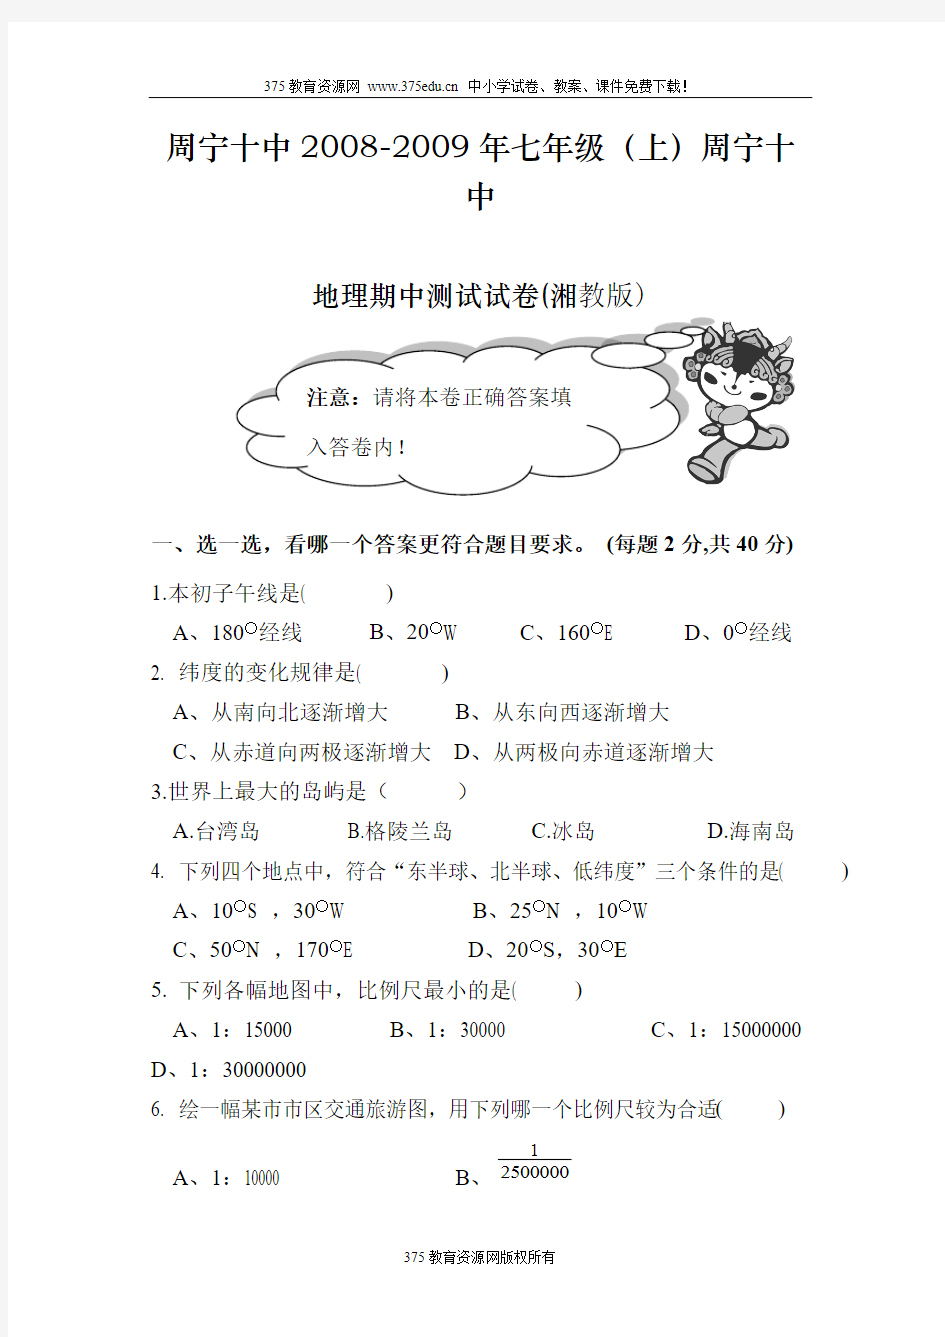 七年级上册湘教版地理期中考试试卷